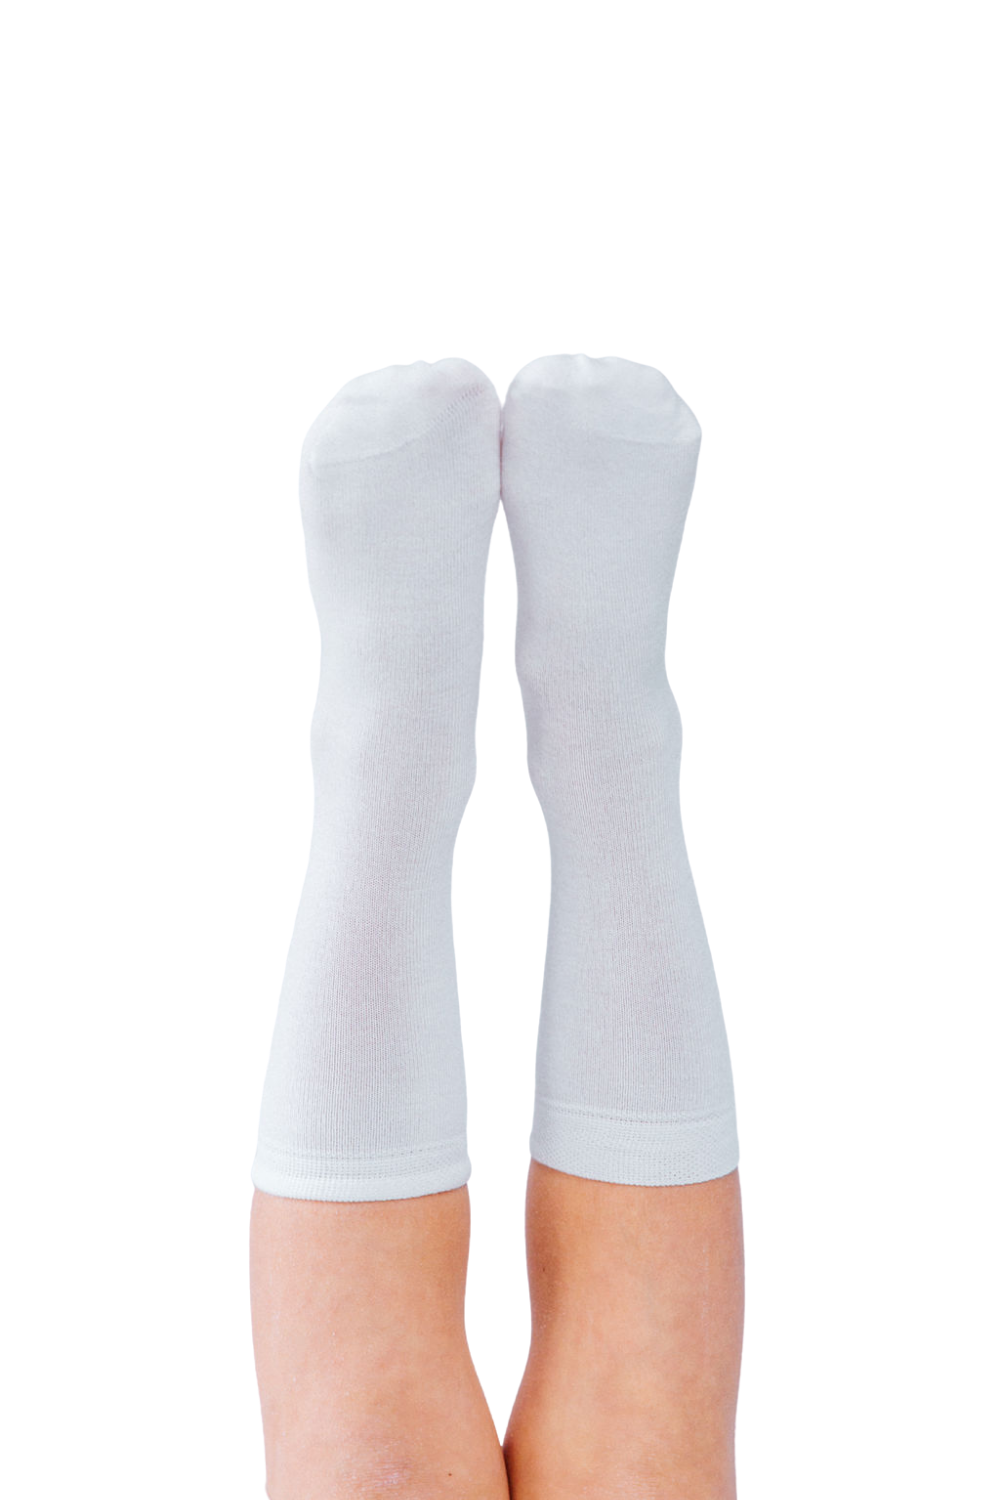 Remedywear Socks - Itchy Feet in Kids